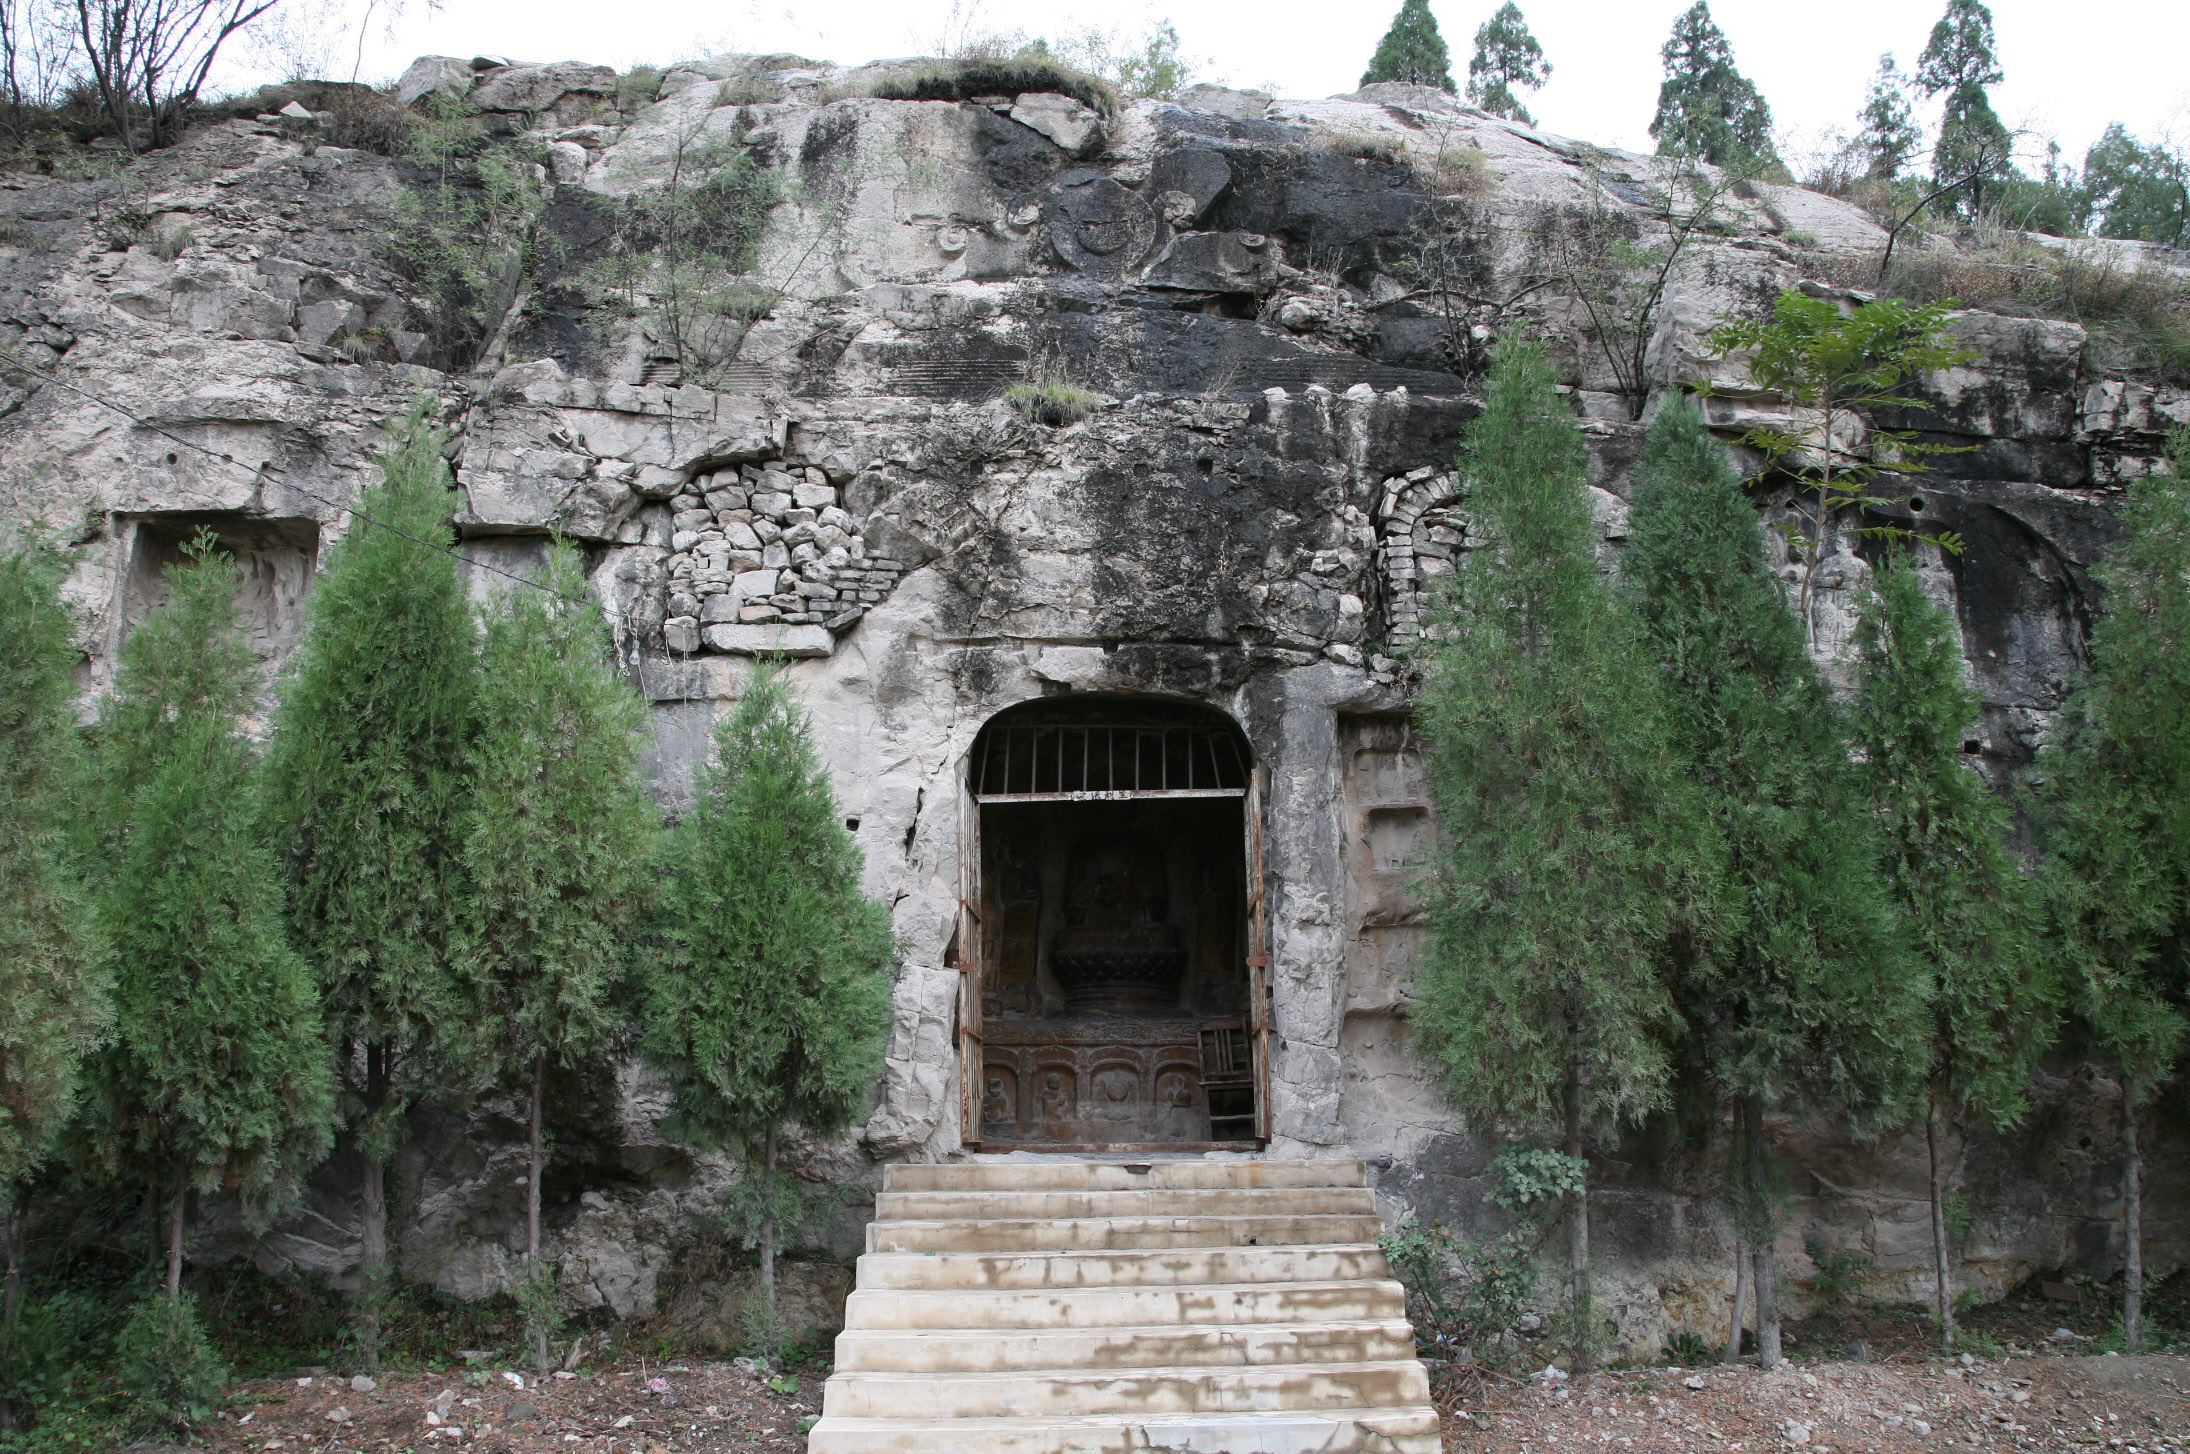 西窟外部立面上也有覆钵顶轮廓和明窗的痕迹，顶端还有摩尼宝珠。